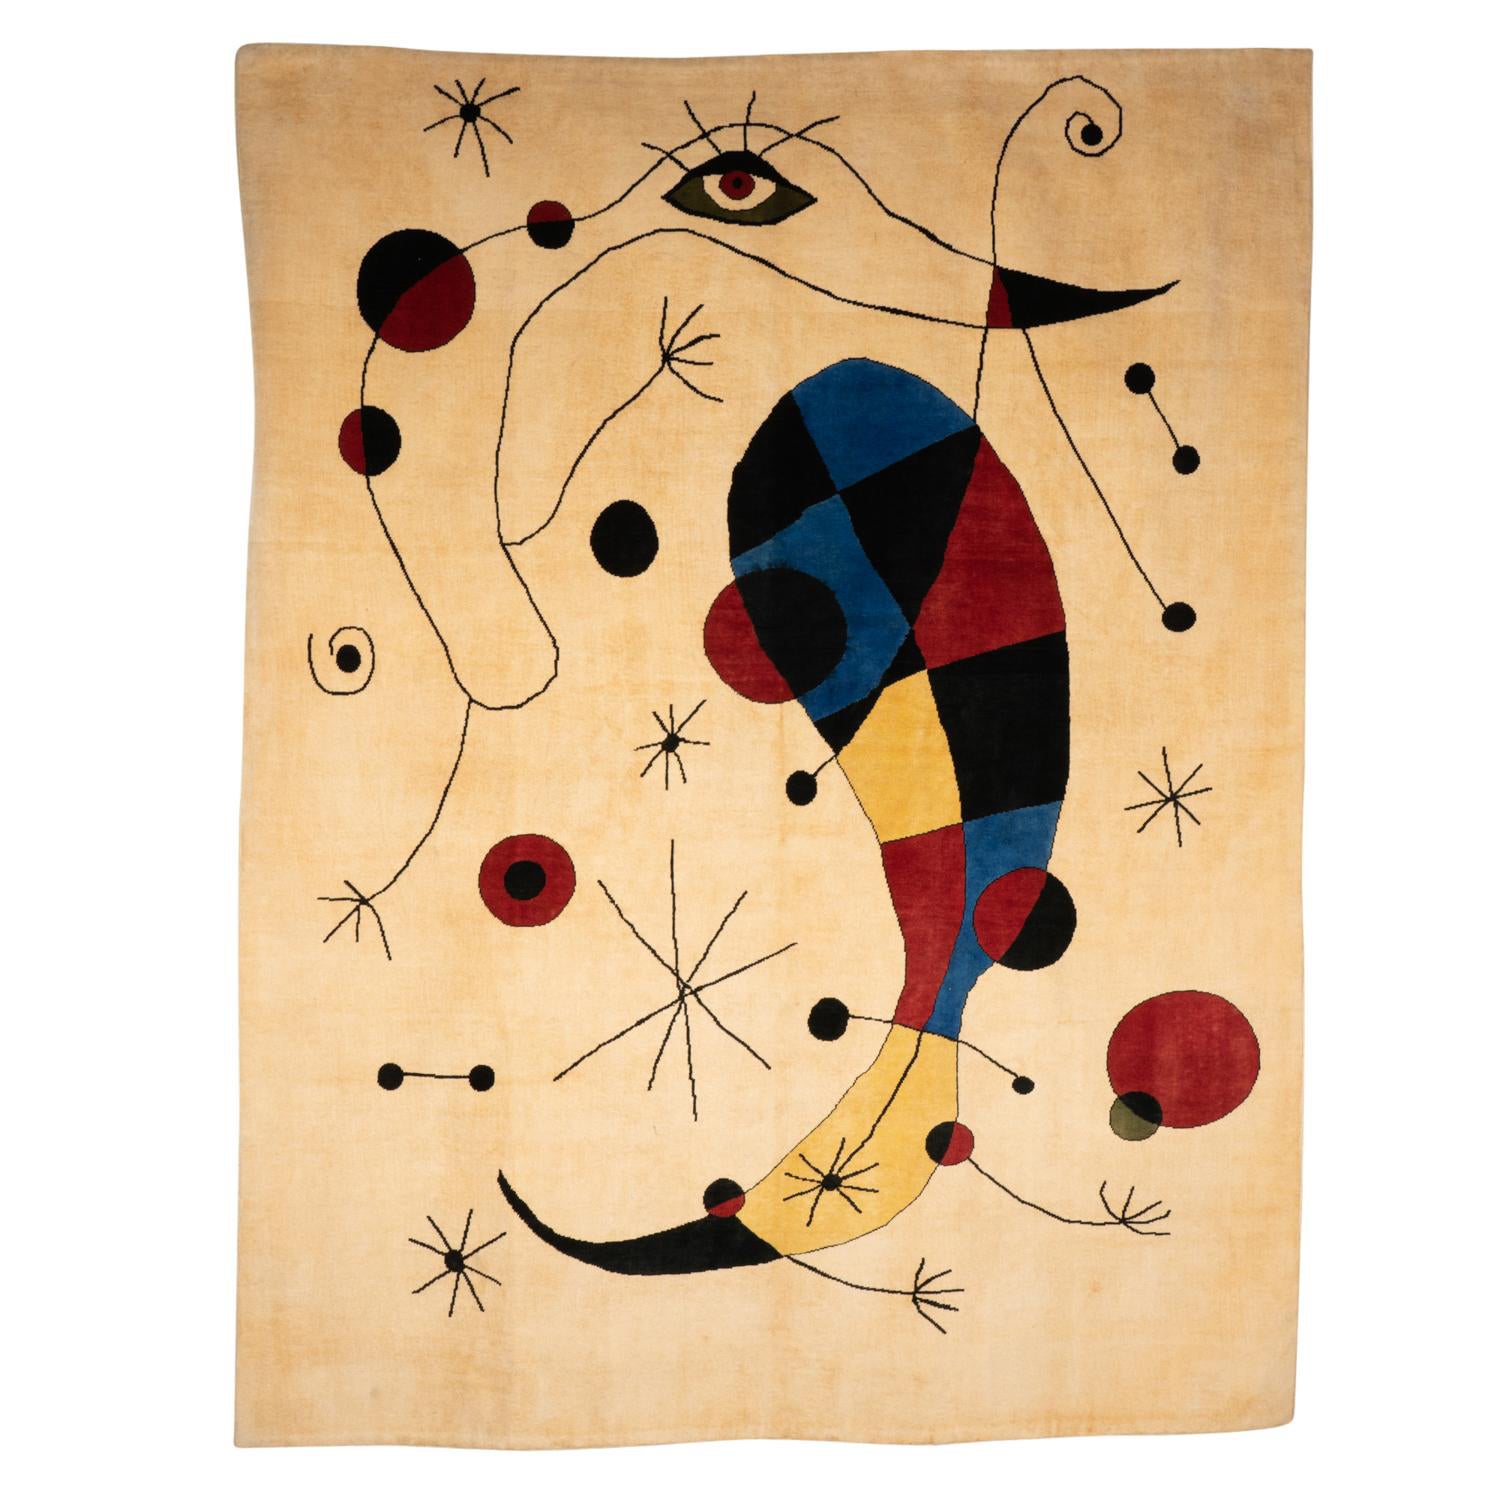 Teppich oder Wandteppich, inspiriert von Joan Miro. Zeitgenössische Arbeit